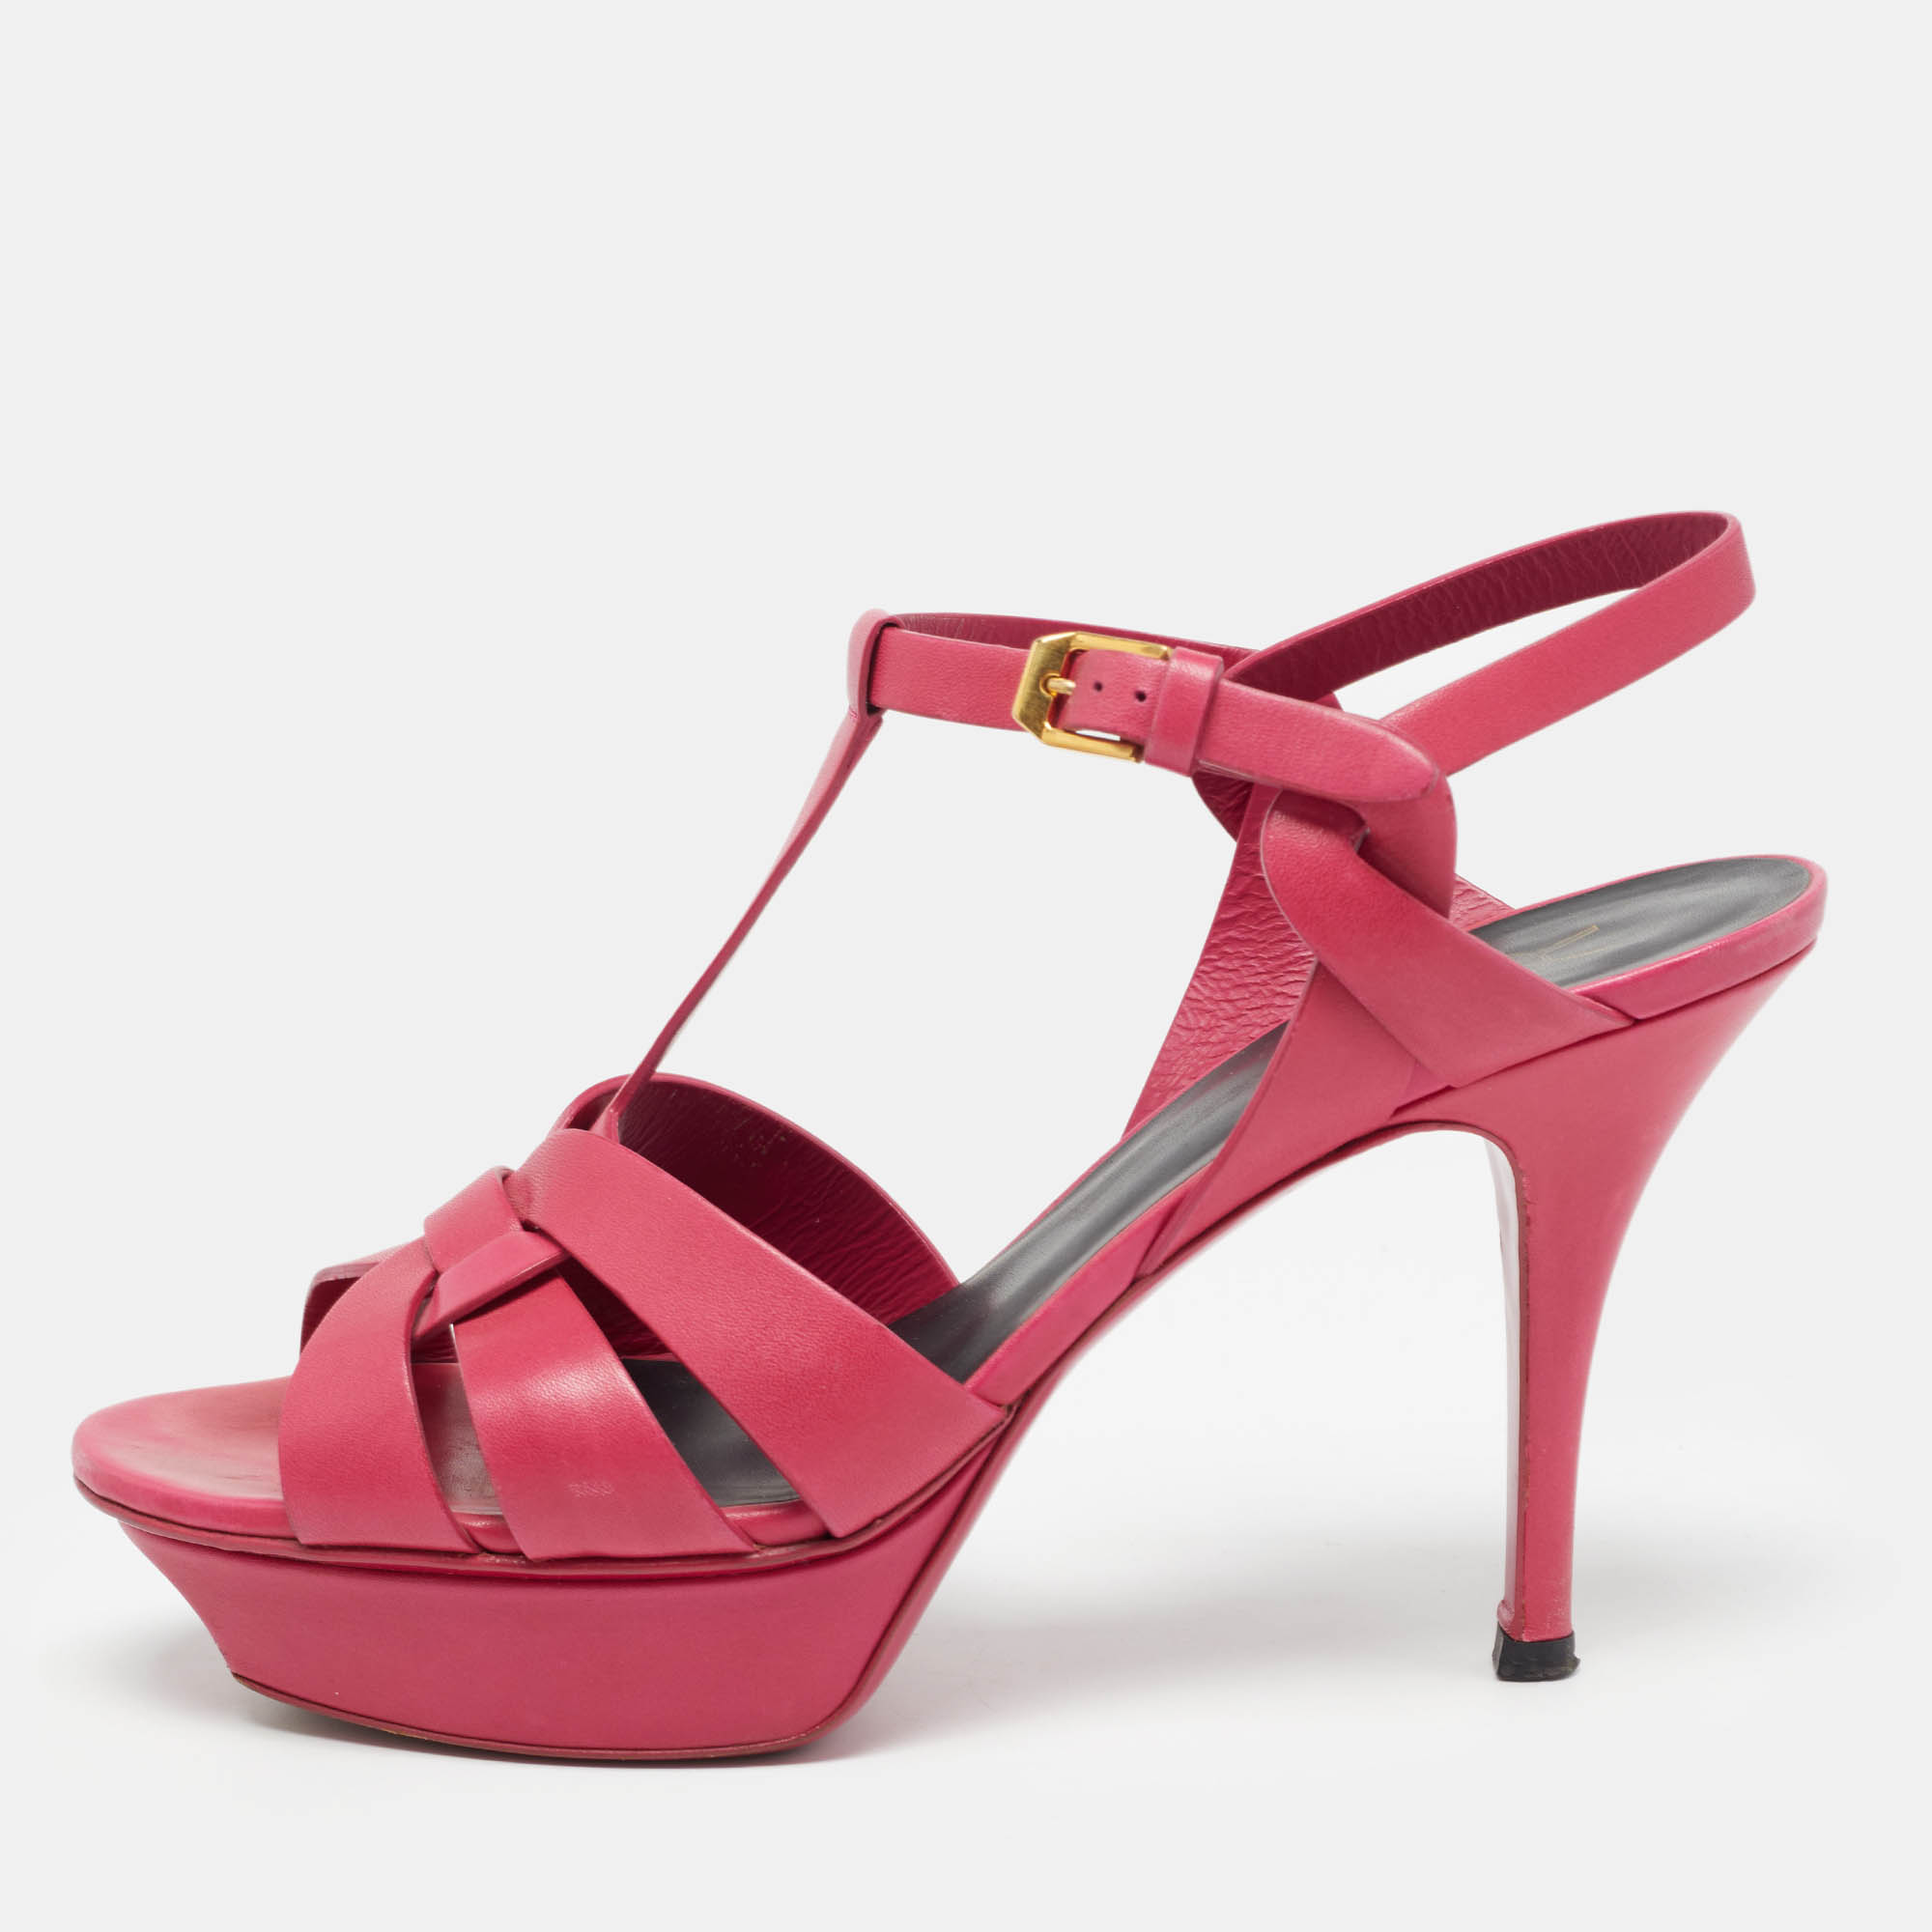 Saint laurent paris saint laurent pink leather tribute platform sandals size 39.5